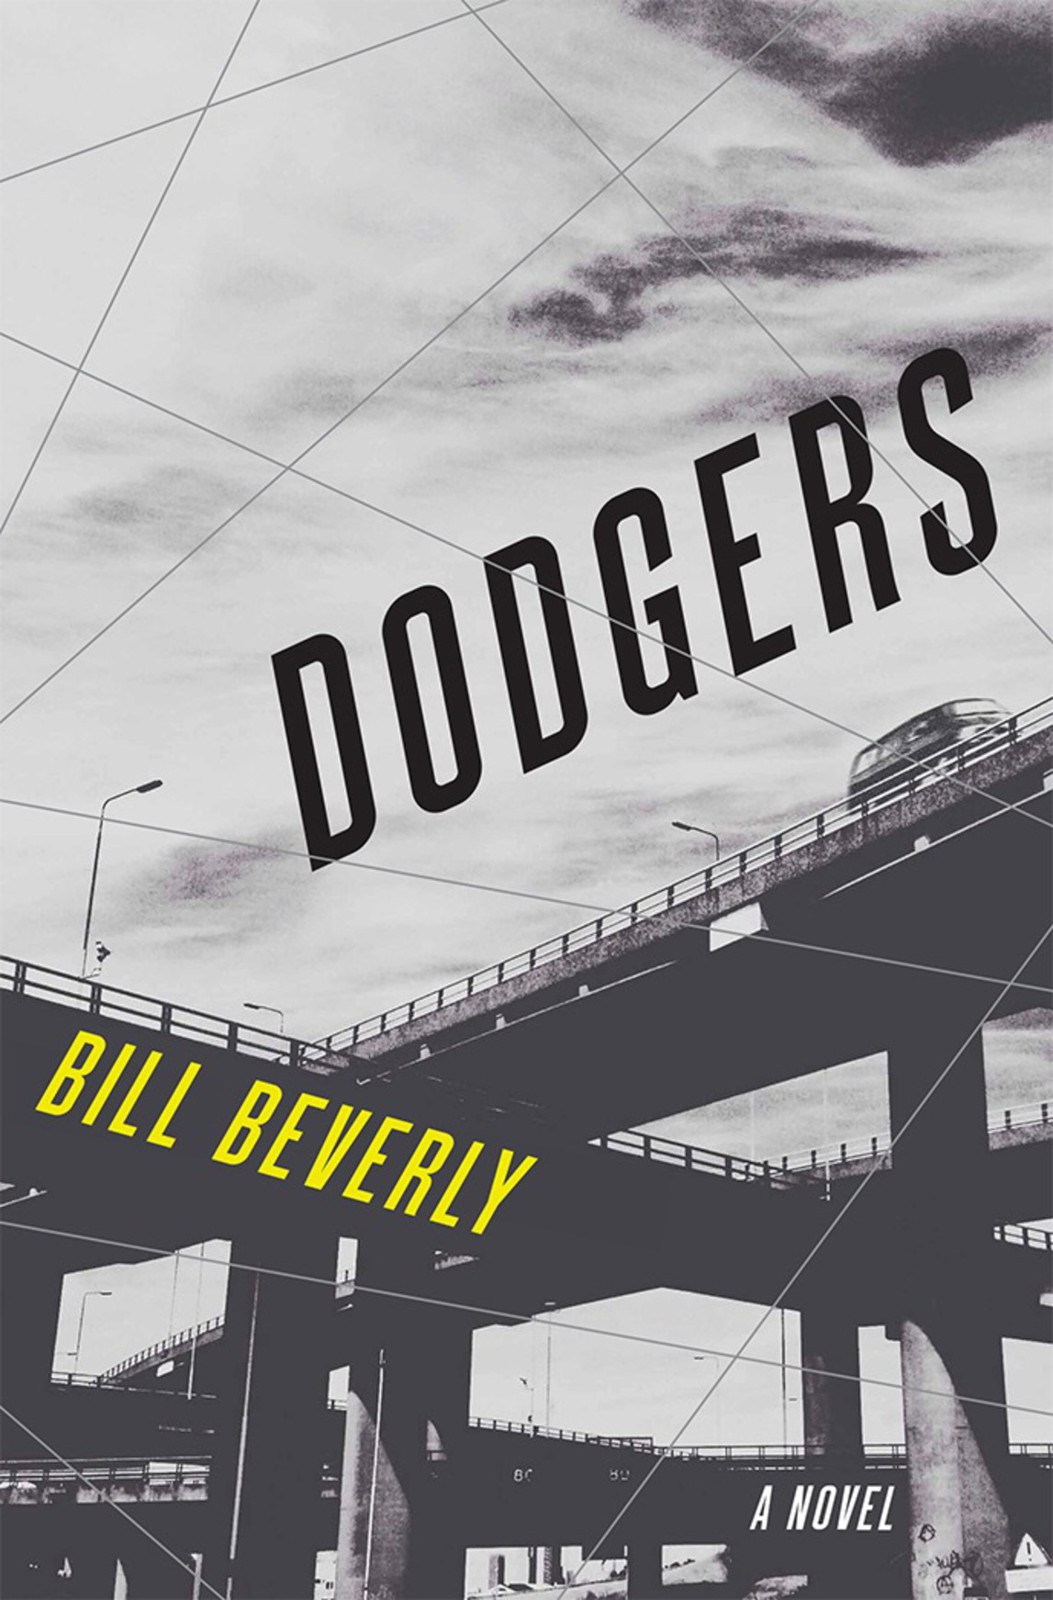 Beverly Bill - Dodgers скачать бесплатно